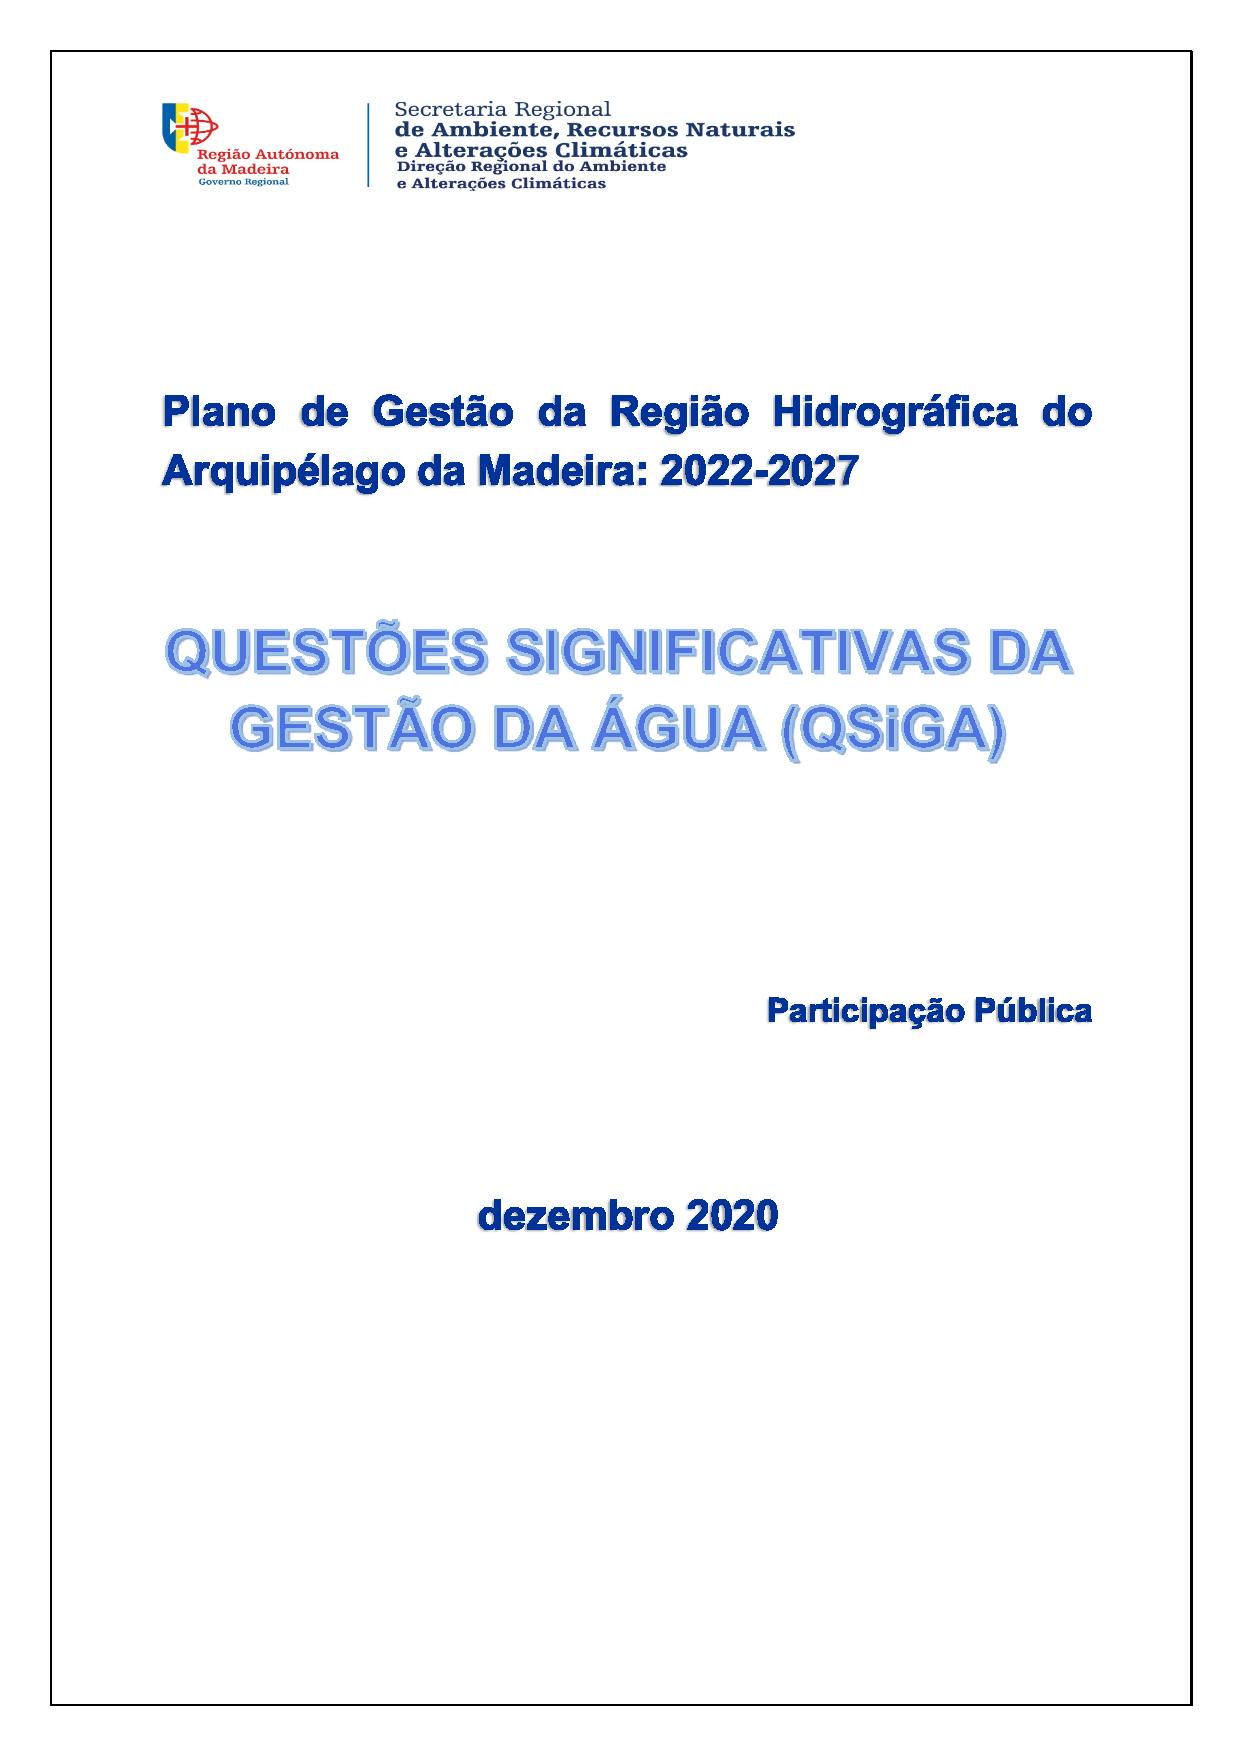 Questões Significativas da Gestão da Água: 2022-2027